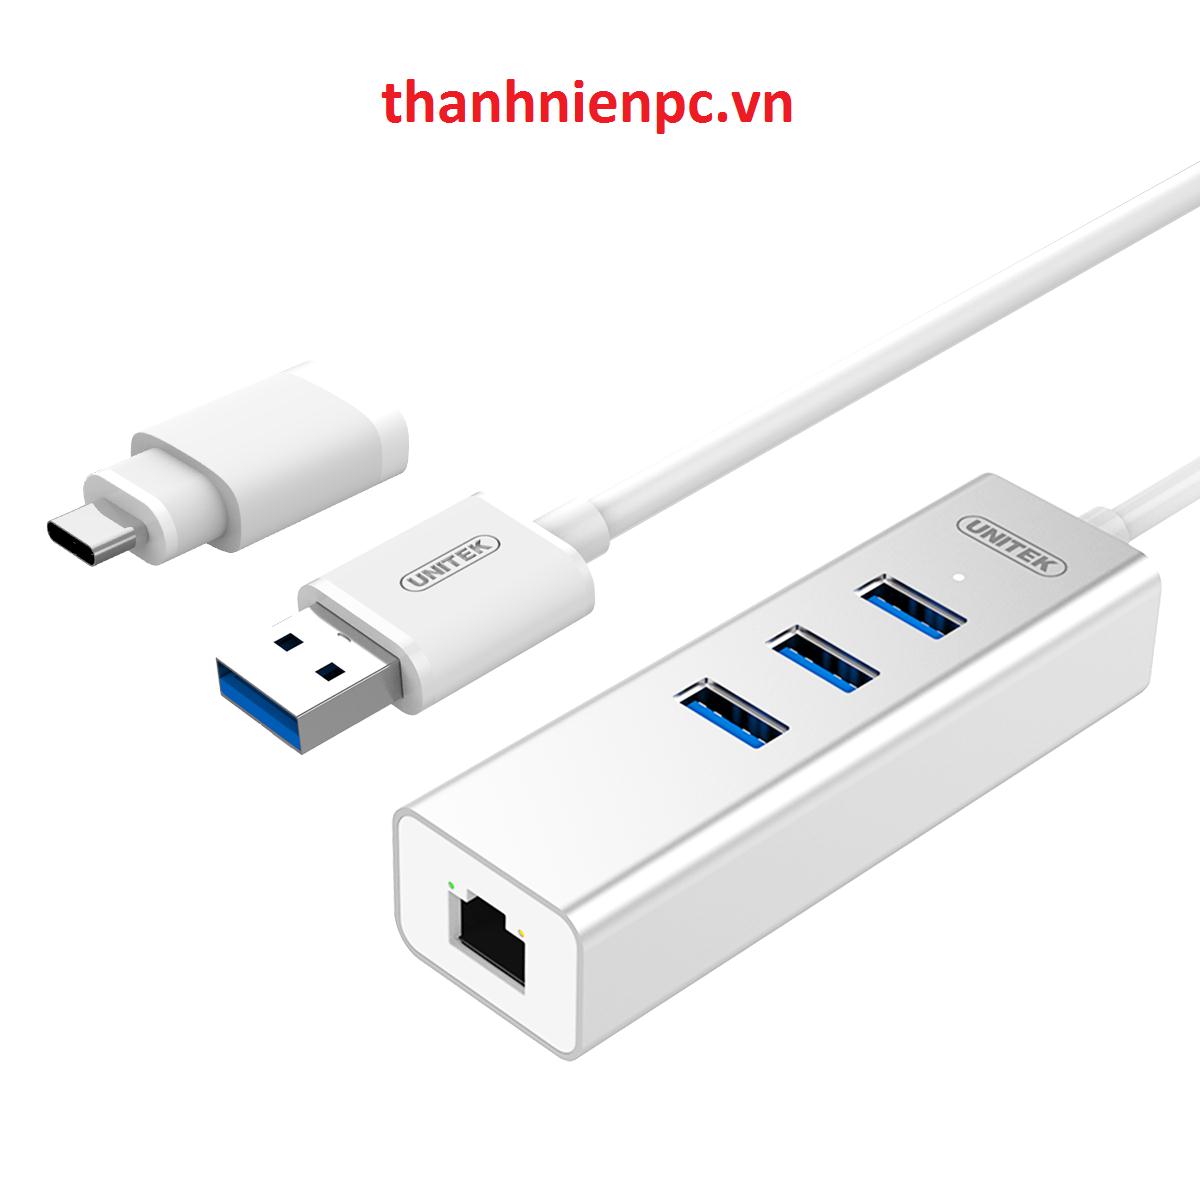 USB3.0 3-Port + Gigabit Ethernet Aluminium Hub